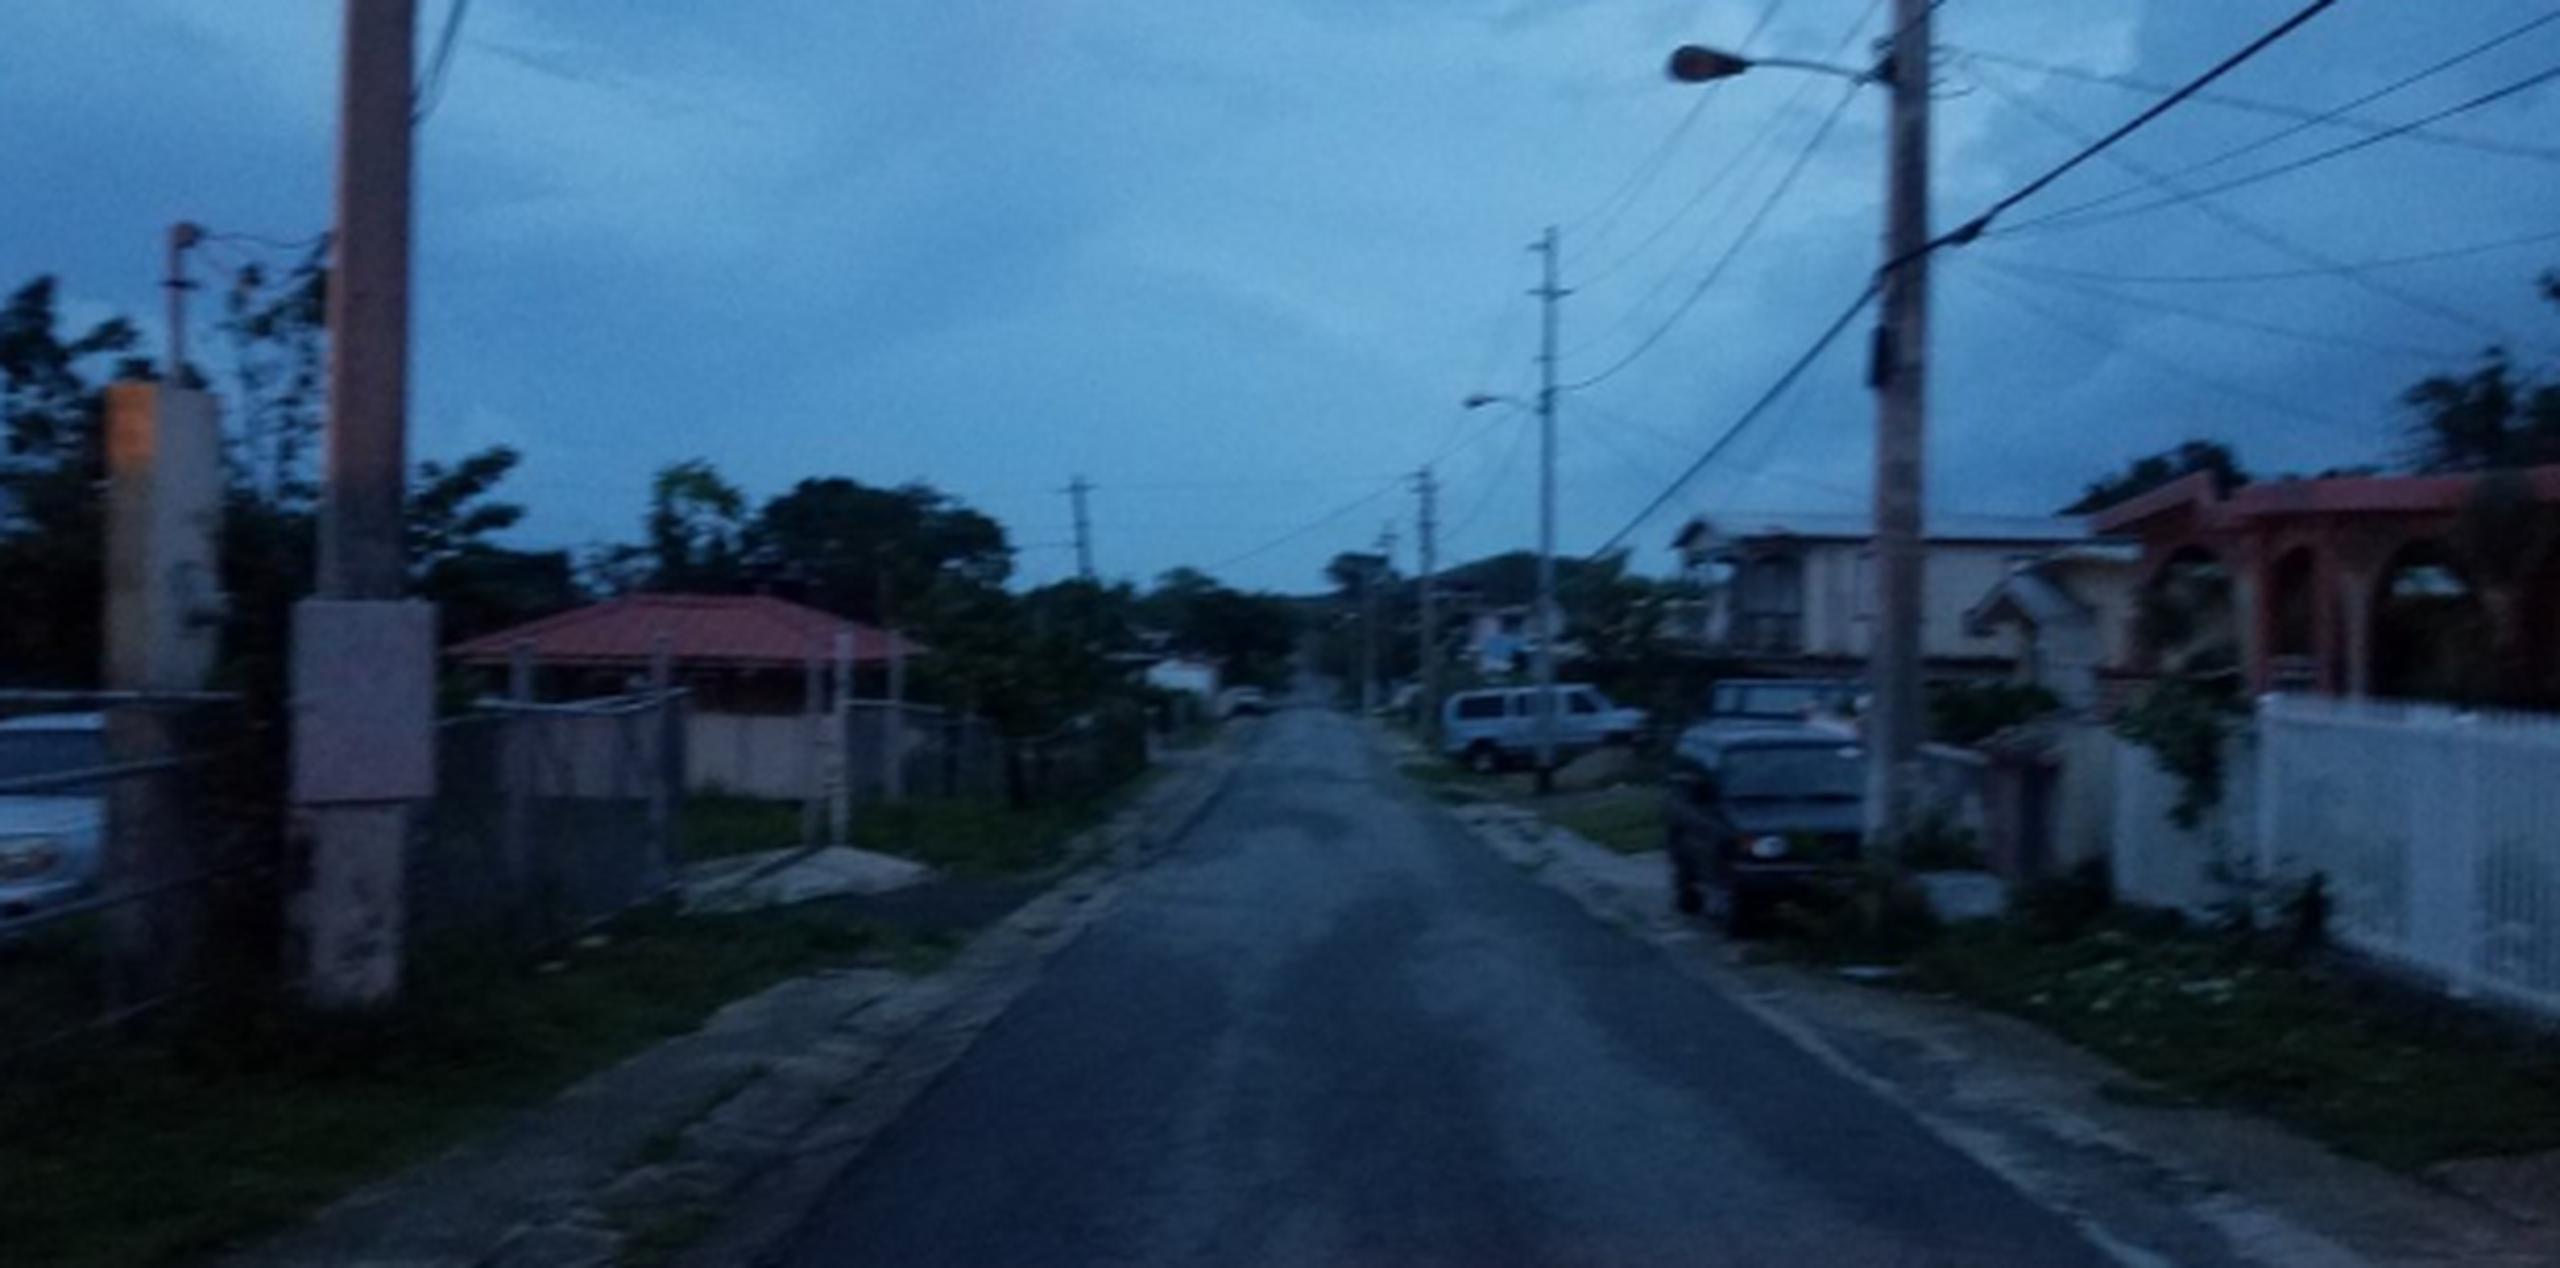 Así se ve parte de Vieques a primera hora de la mañana. (michelle. estrada@gfrmedia.com)